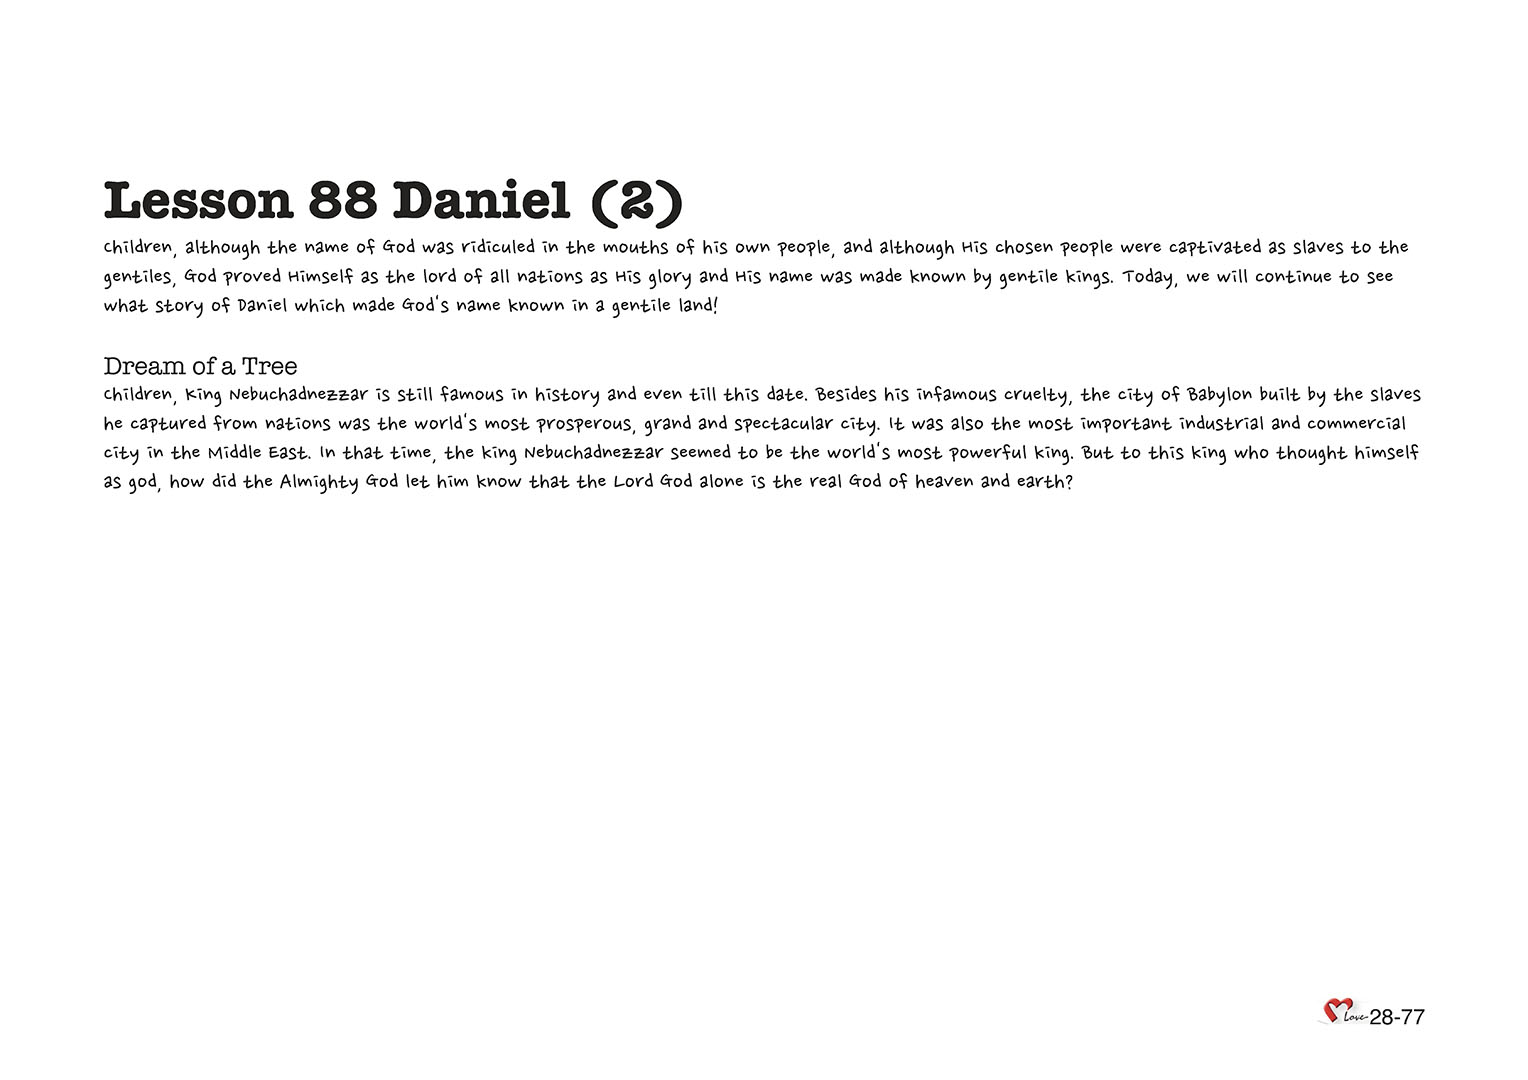 Chapter 28 - Lesson 88 - Daniel (2)